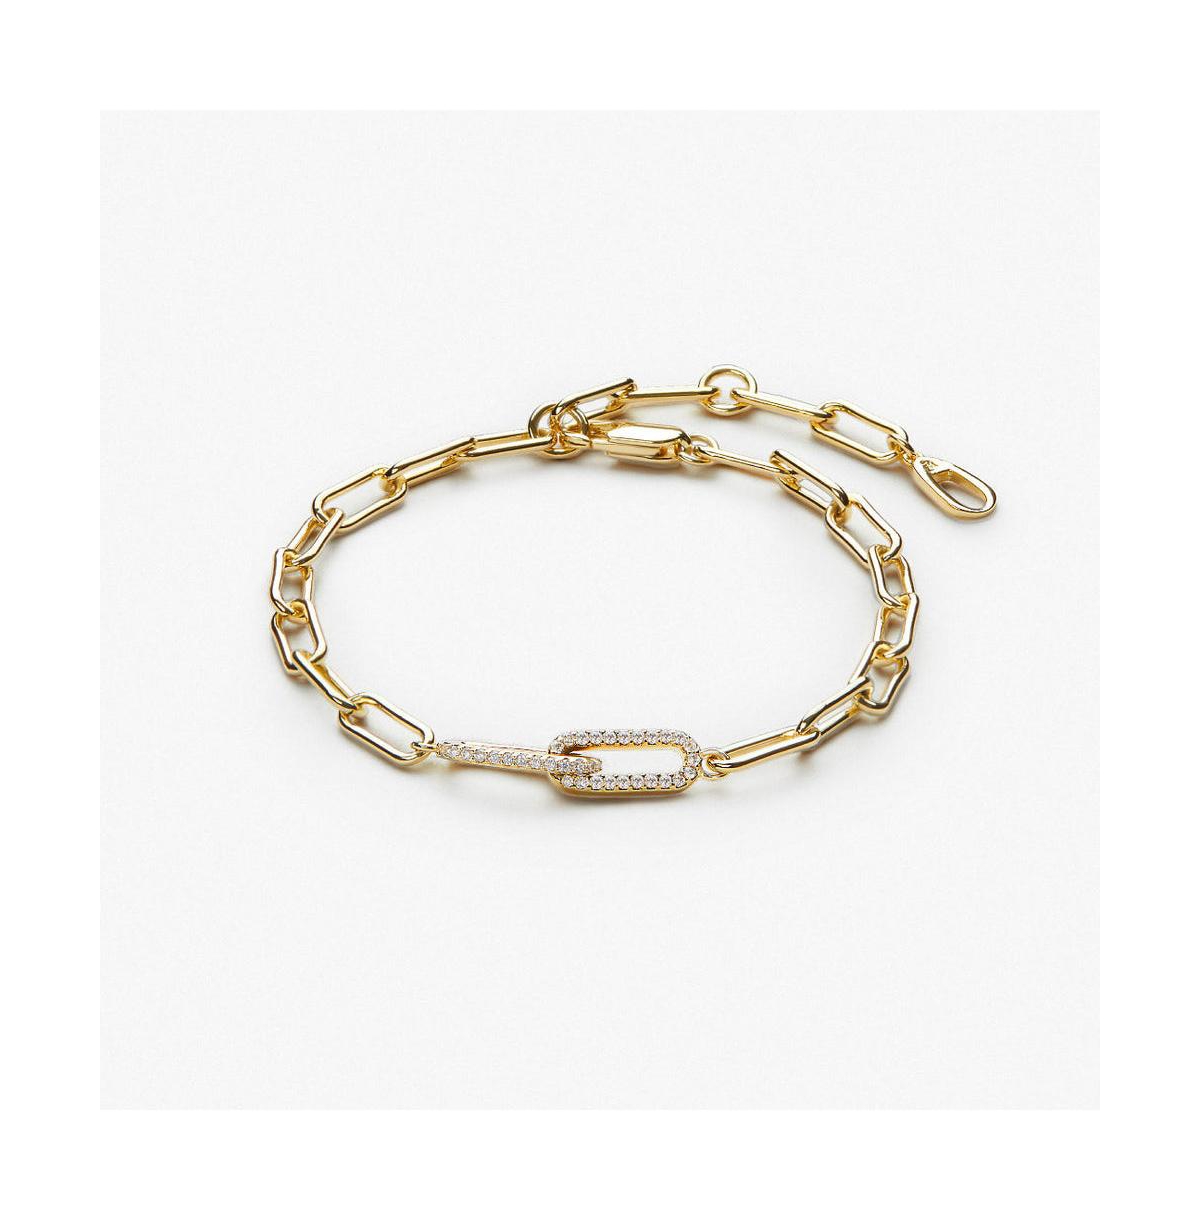 Paperclip Bracelet - Souryaz Bracelet - Gold